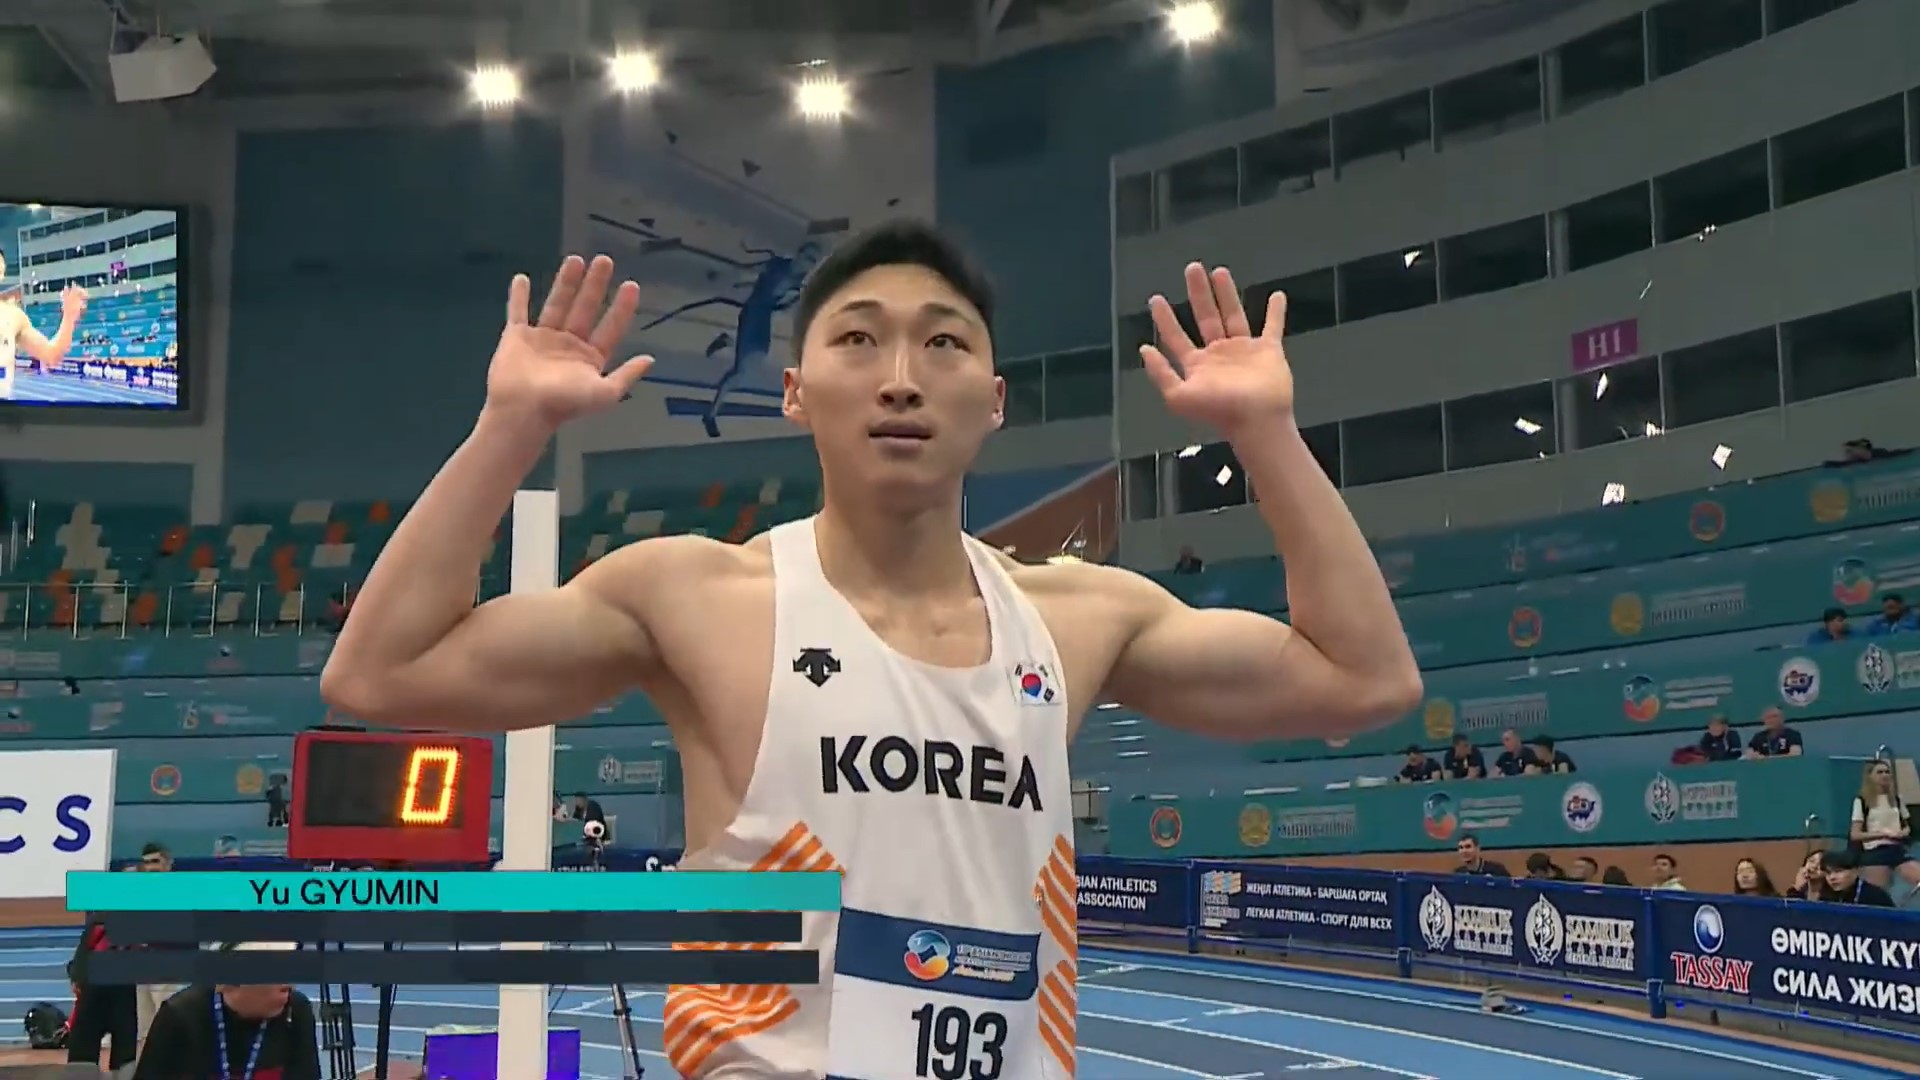 아시아실내육상선수권 남자 세단뛰기에서 동메달을 따낸 유규민. Qaz Athletics 유튜브 방송 캡쳐